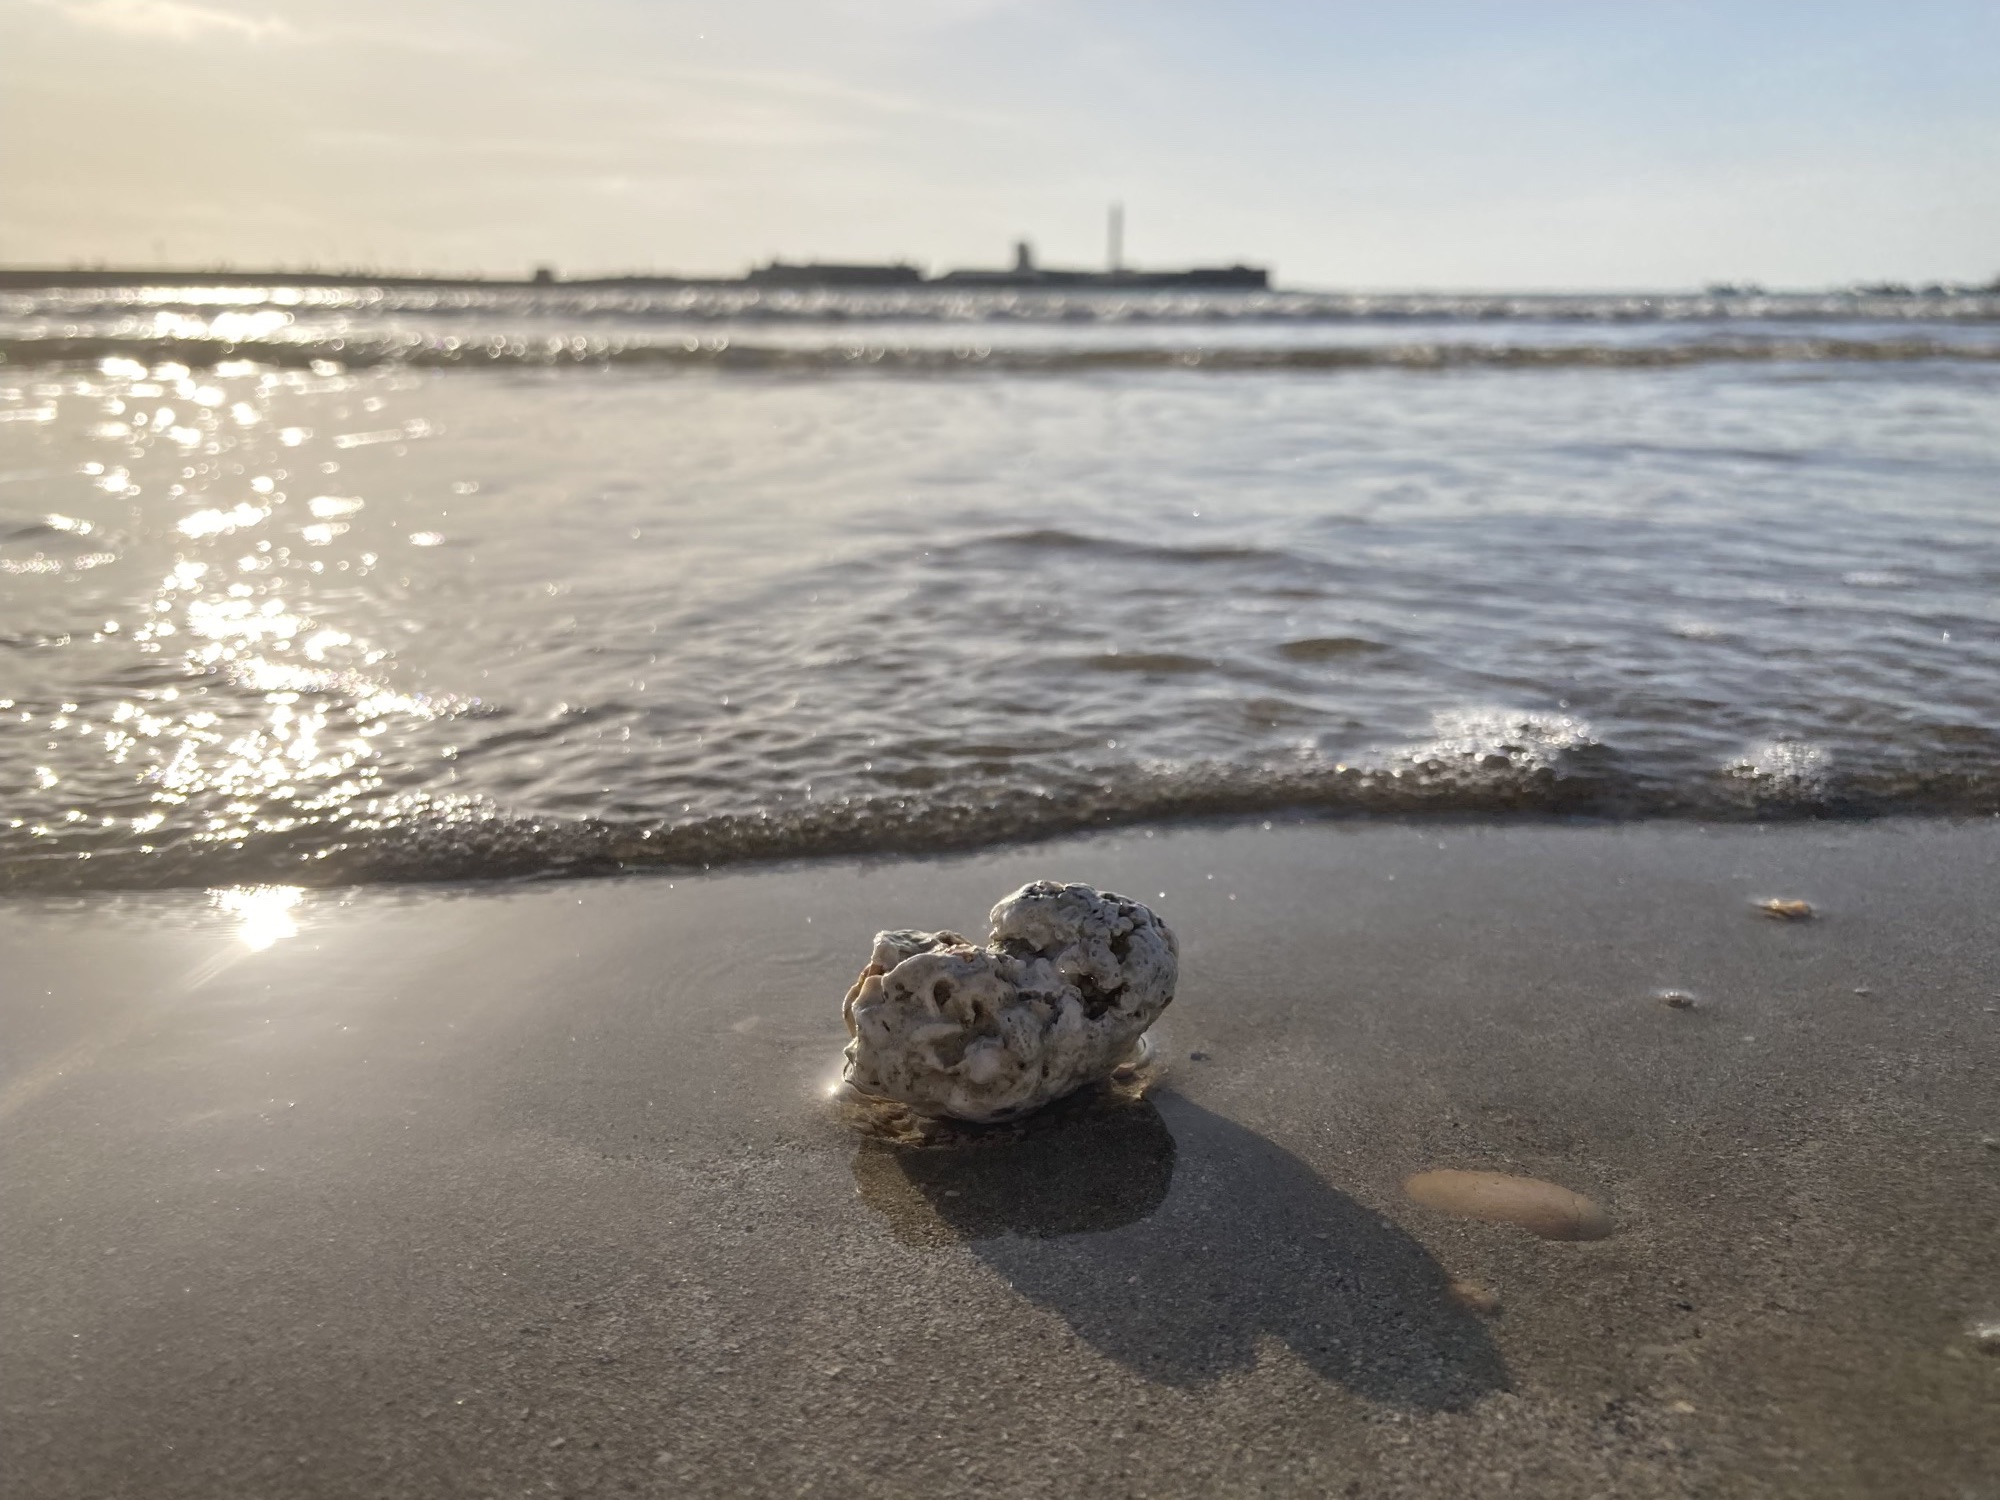 Detailaufnahme eines Steins mit Löchern im Sand gerade bevor er von einer Welle überschwemmt wird